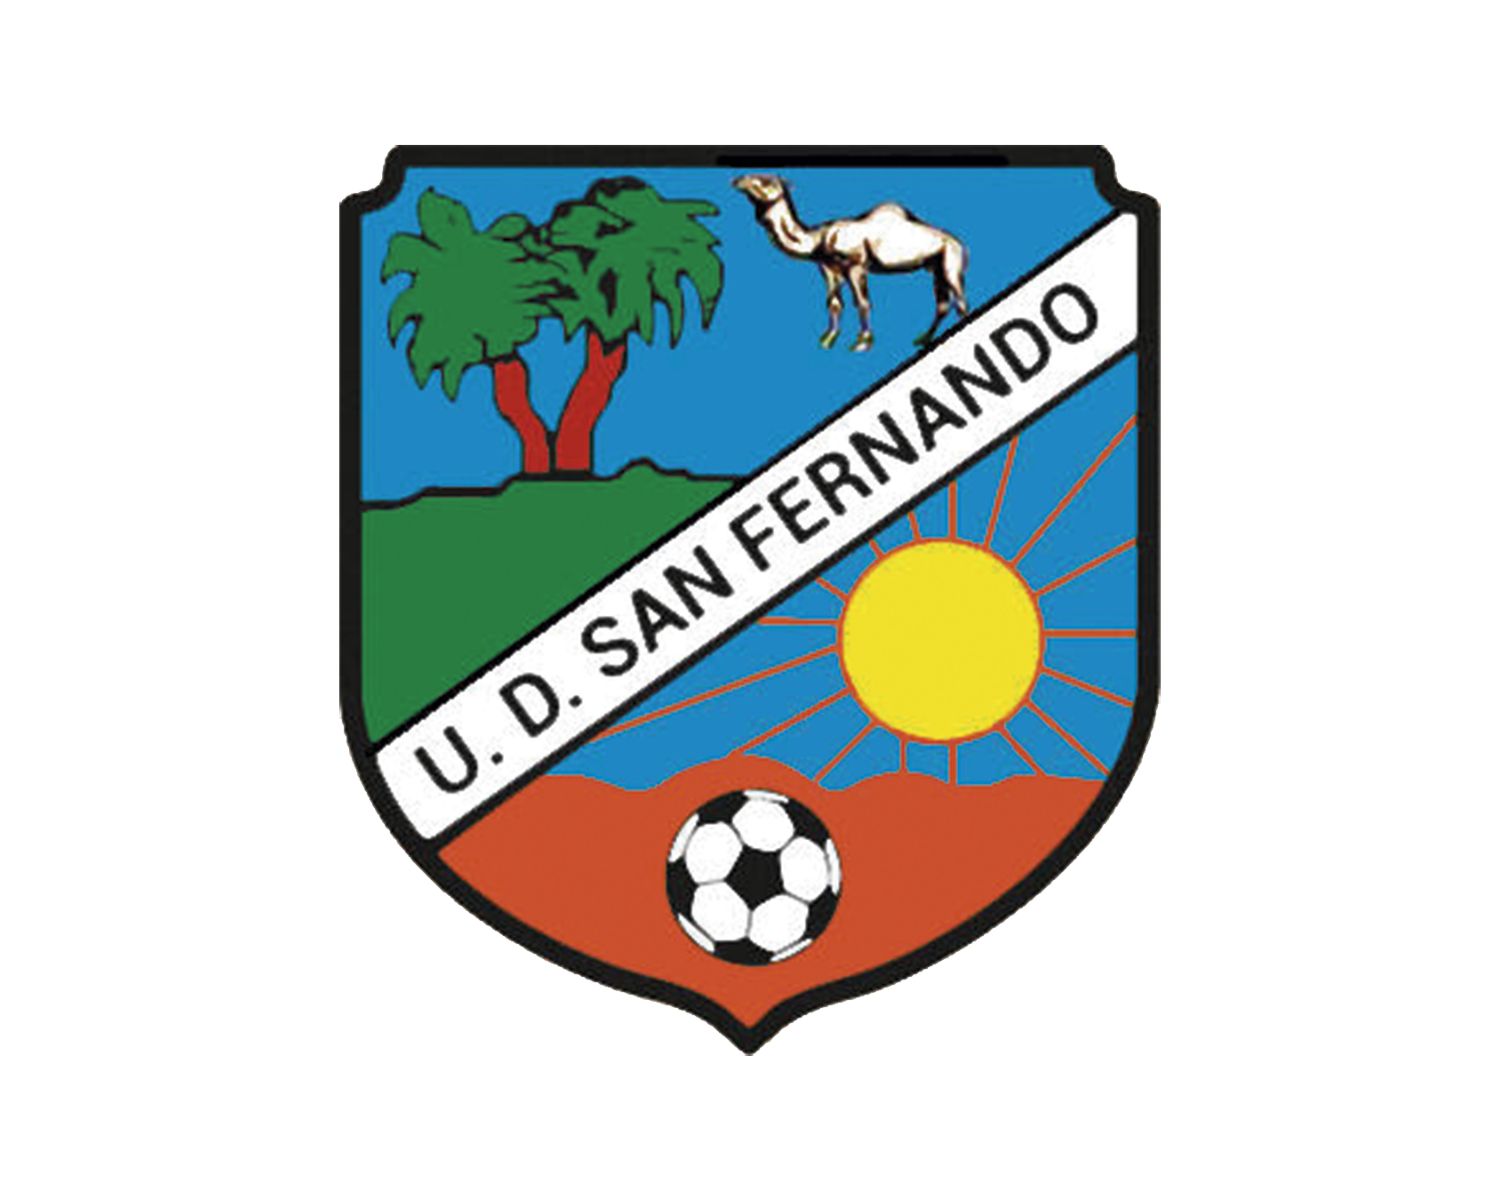 ud-san-fernando-25-football-club-facts